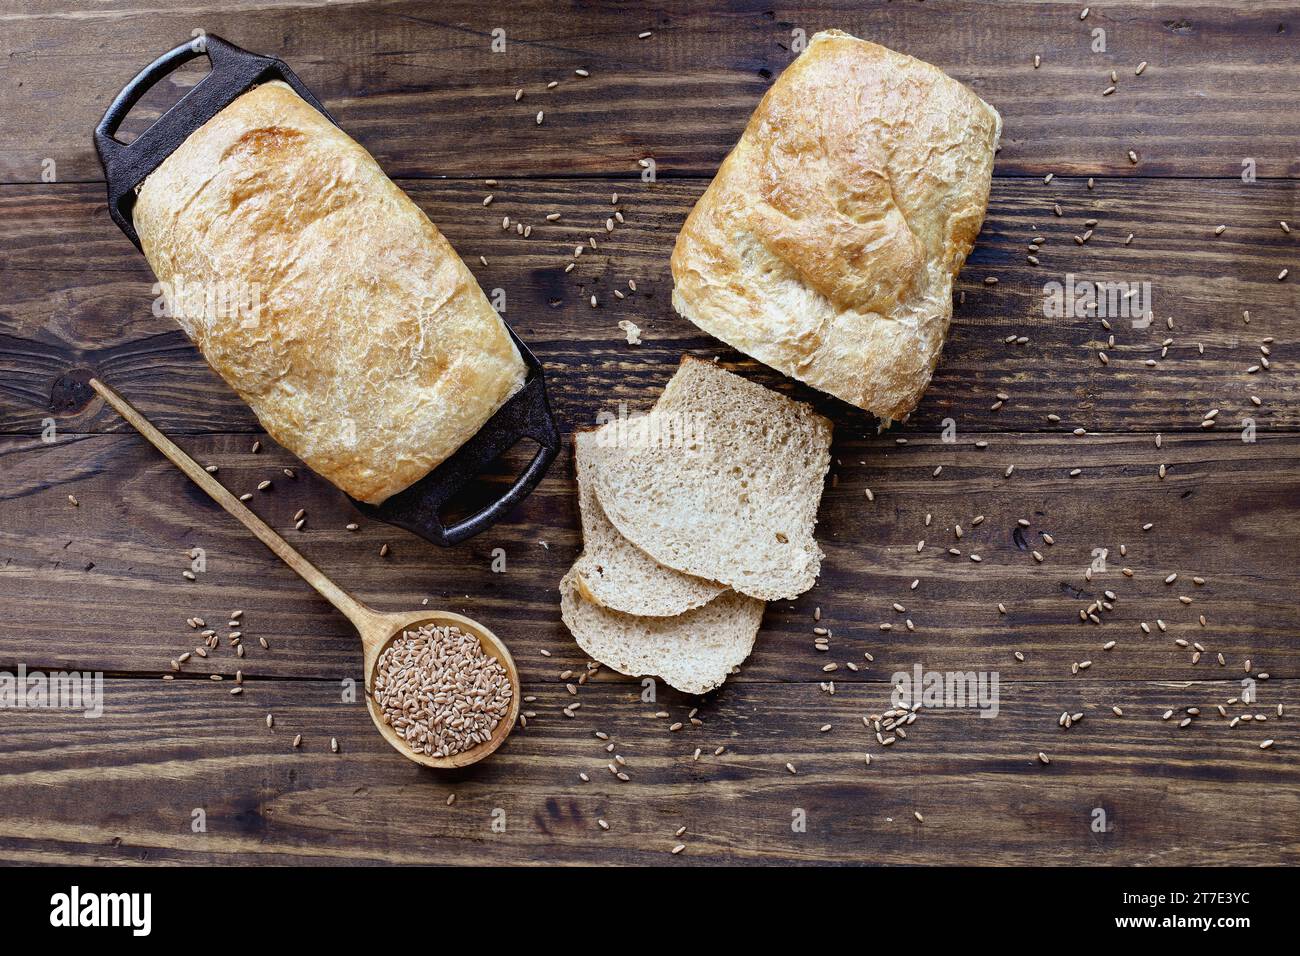 Vue au-dessus de la table de pains de blé entier fraîchement cuits avec cuillère en bois remplie de grain. Frais généraux. Banque D'Images